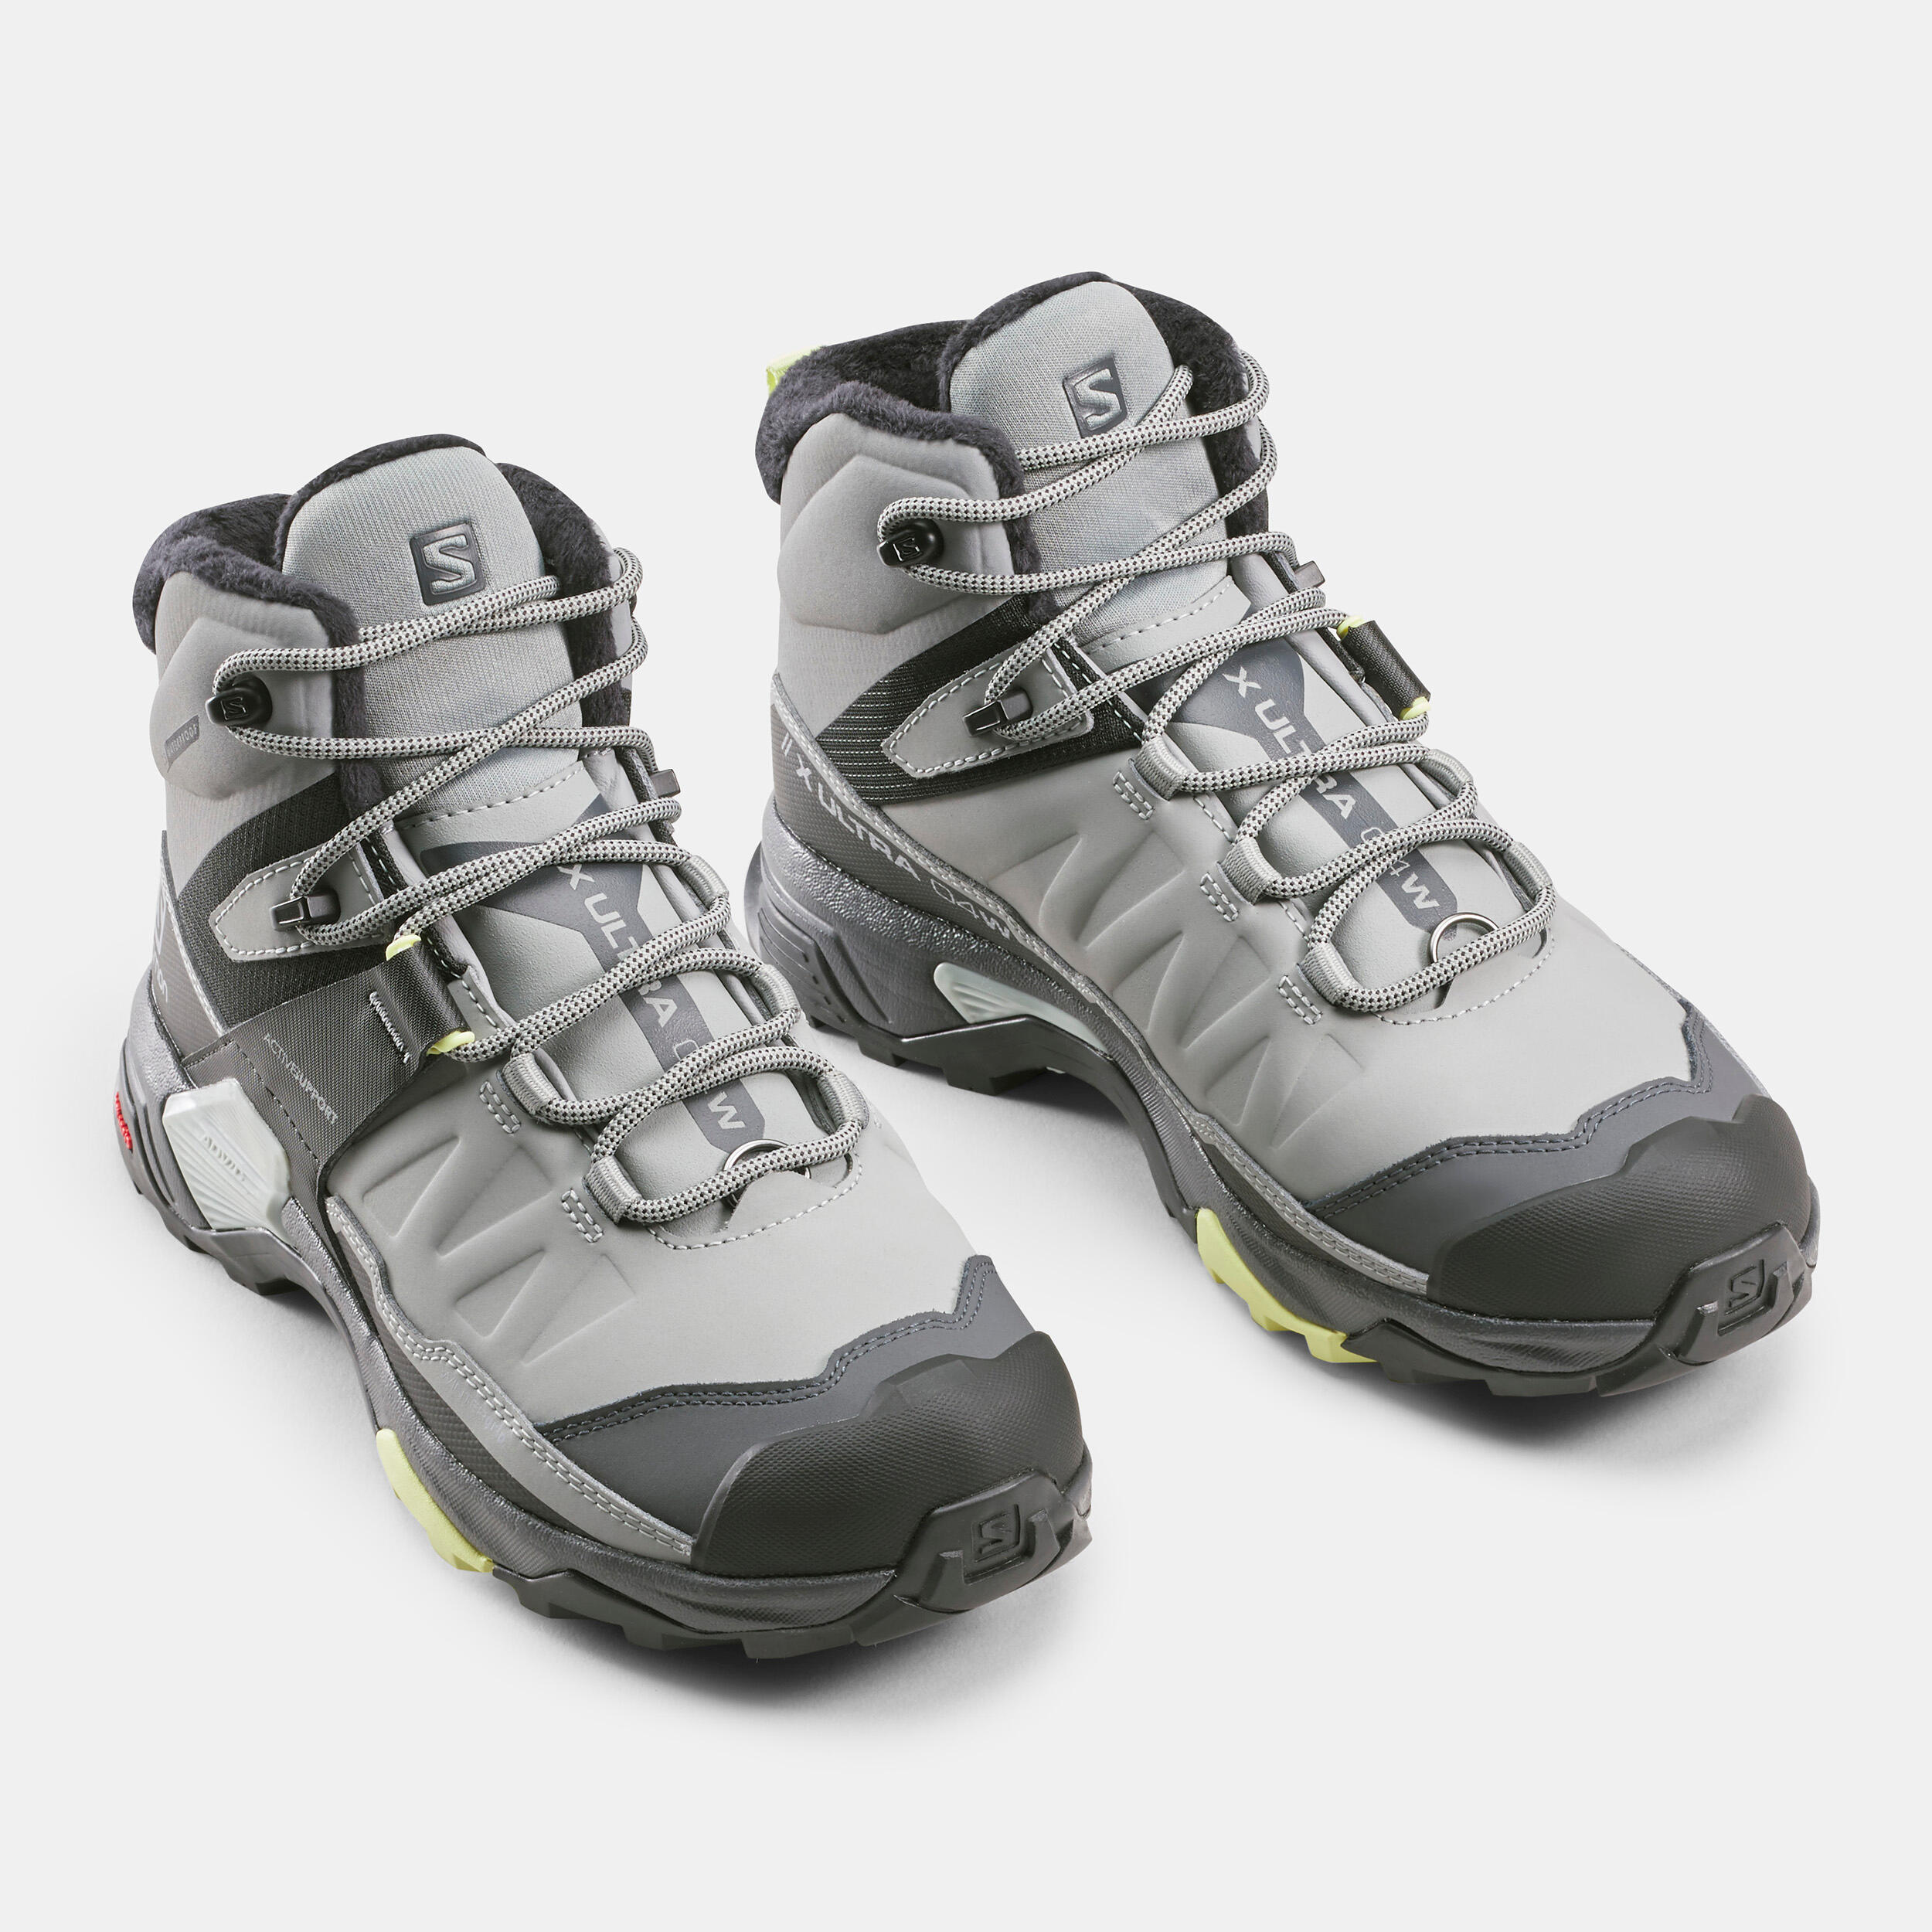 Women's winter walking boots - Salomon Quest mid XUltra 04 - Black 3/5